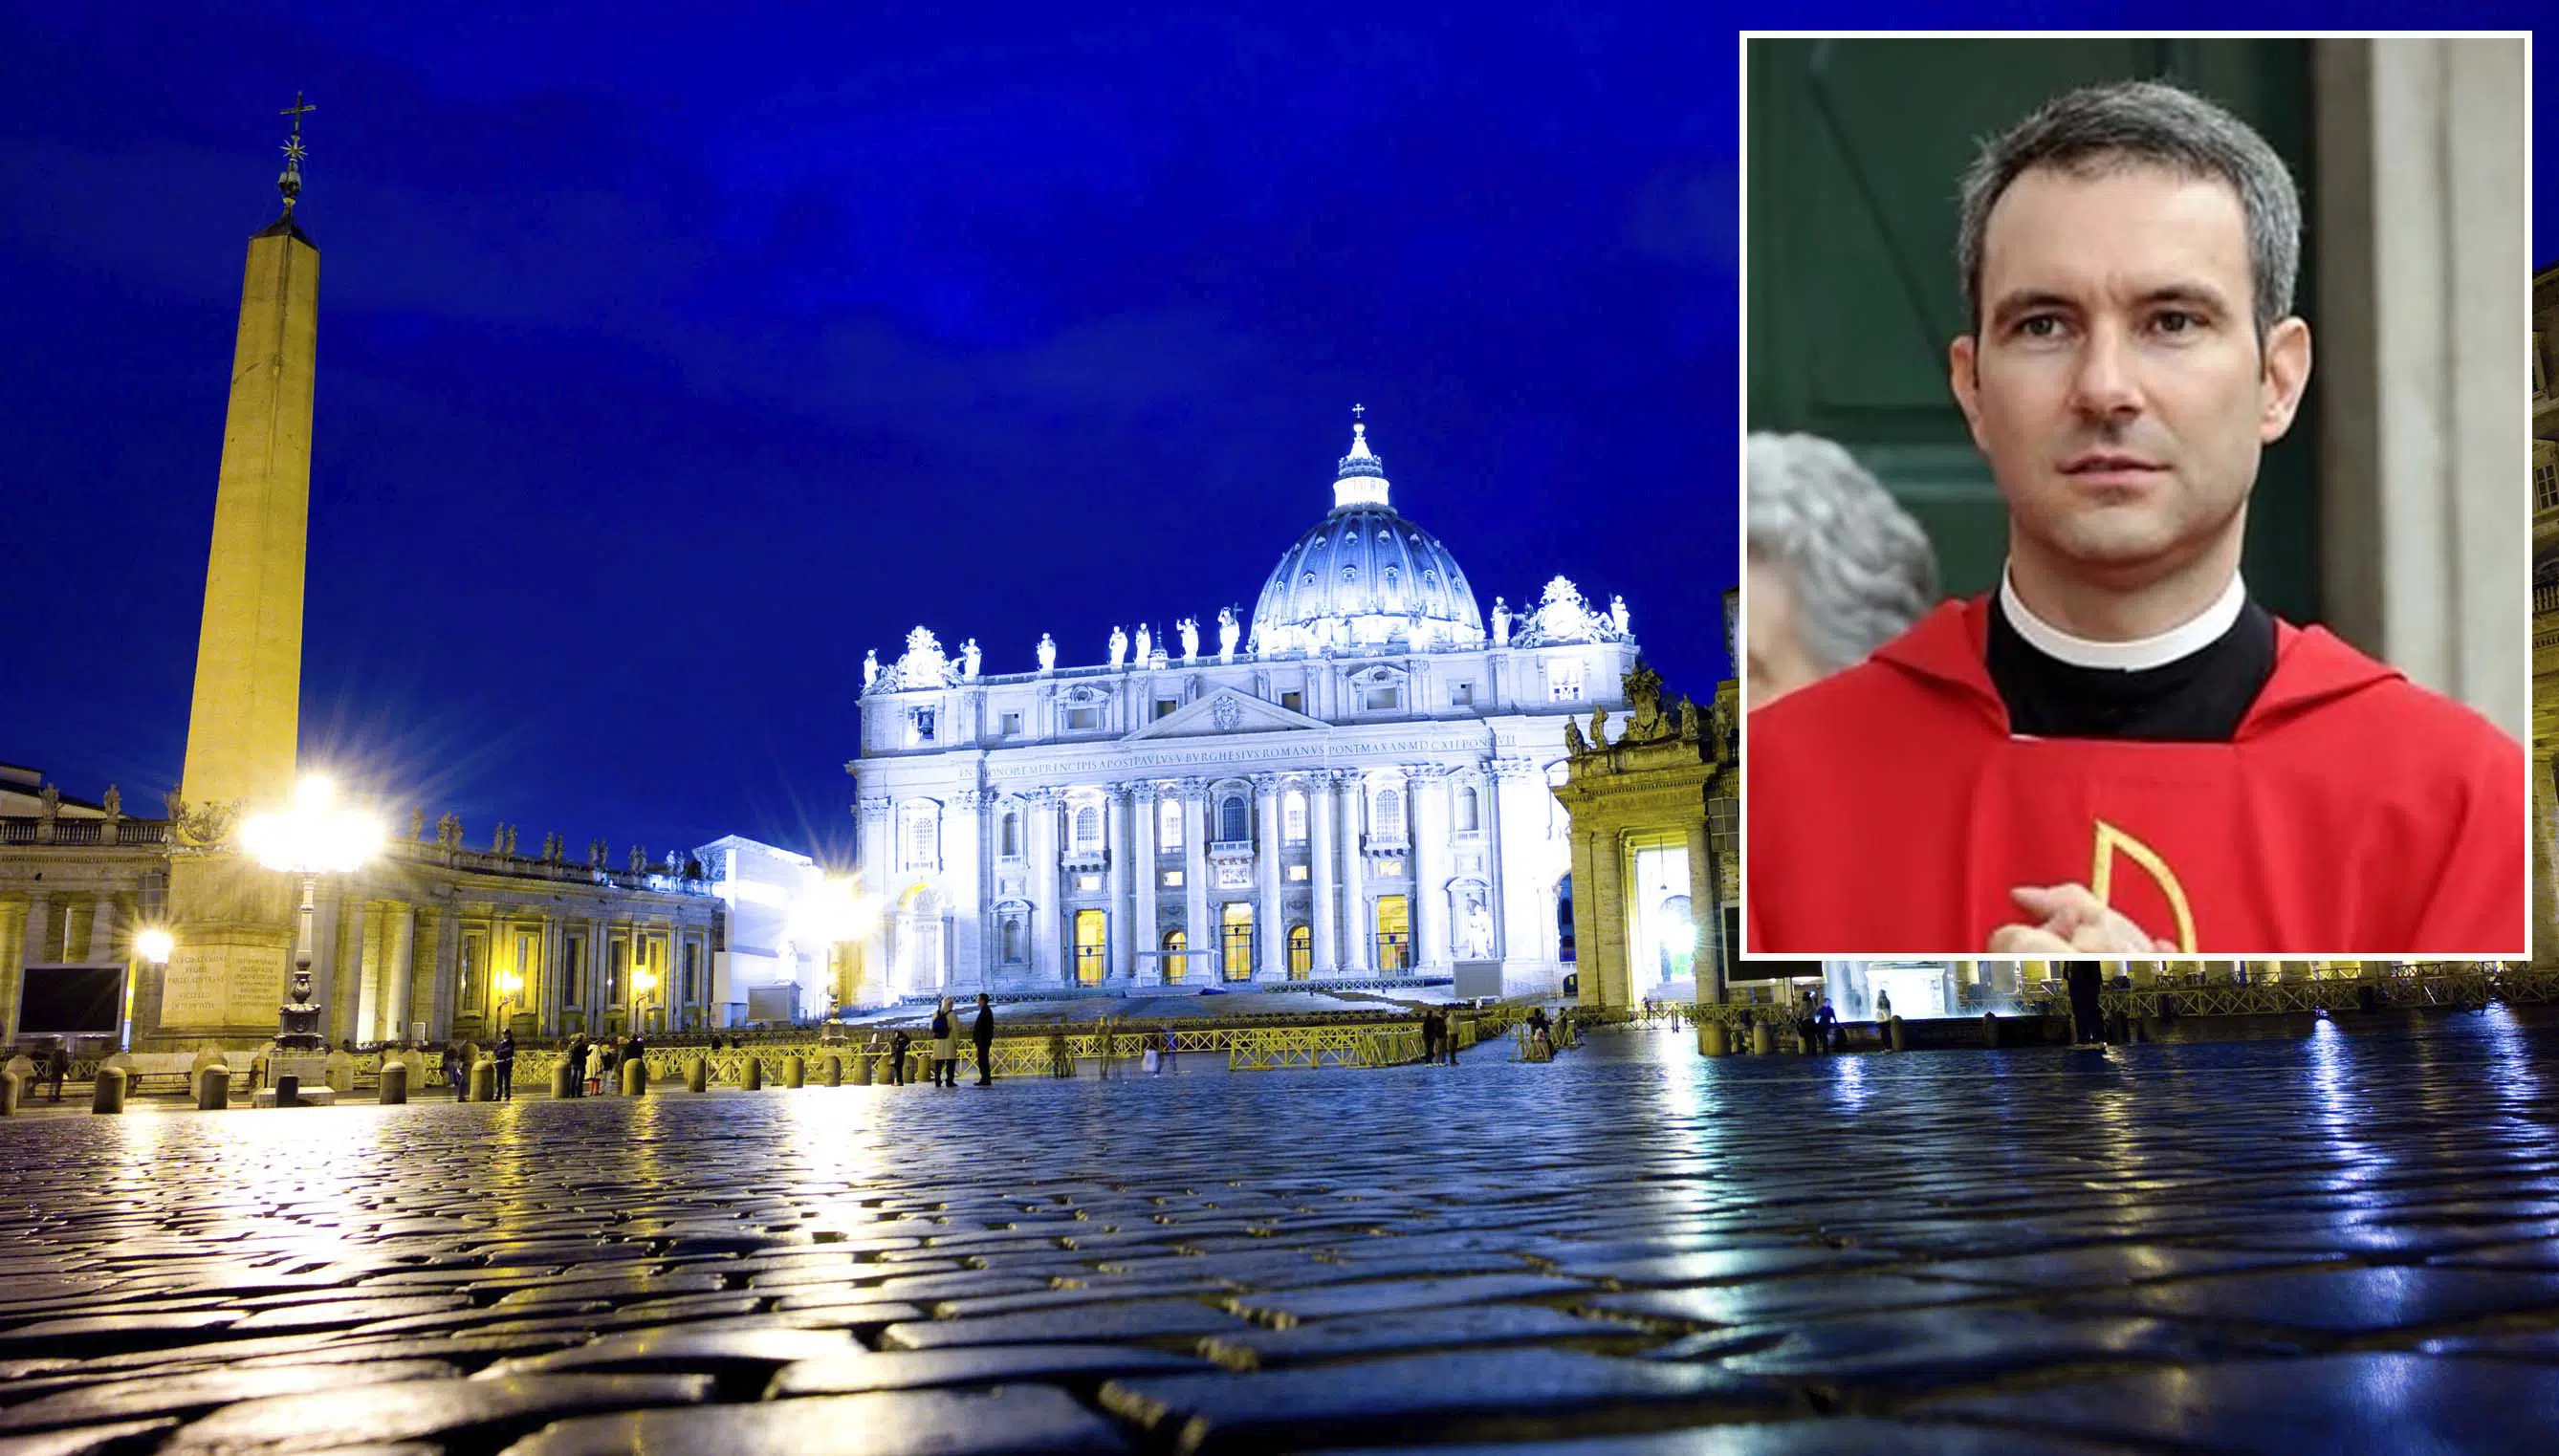 La justicia del Vaticano condena a un sacerdote a 5 años de prisión por posesión de pornografía infantil